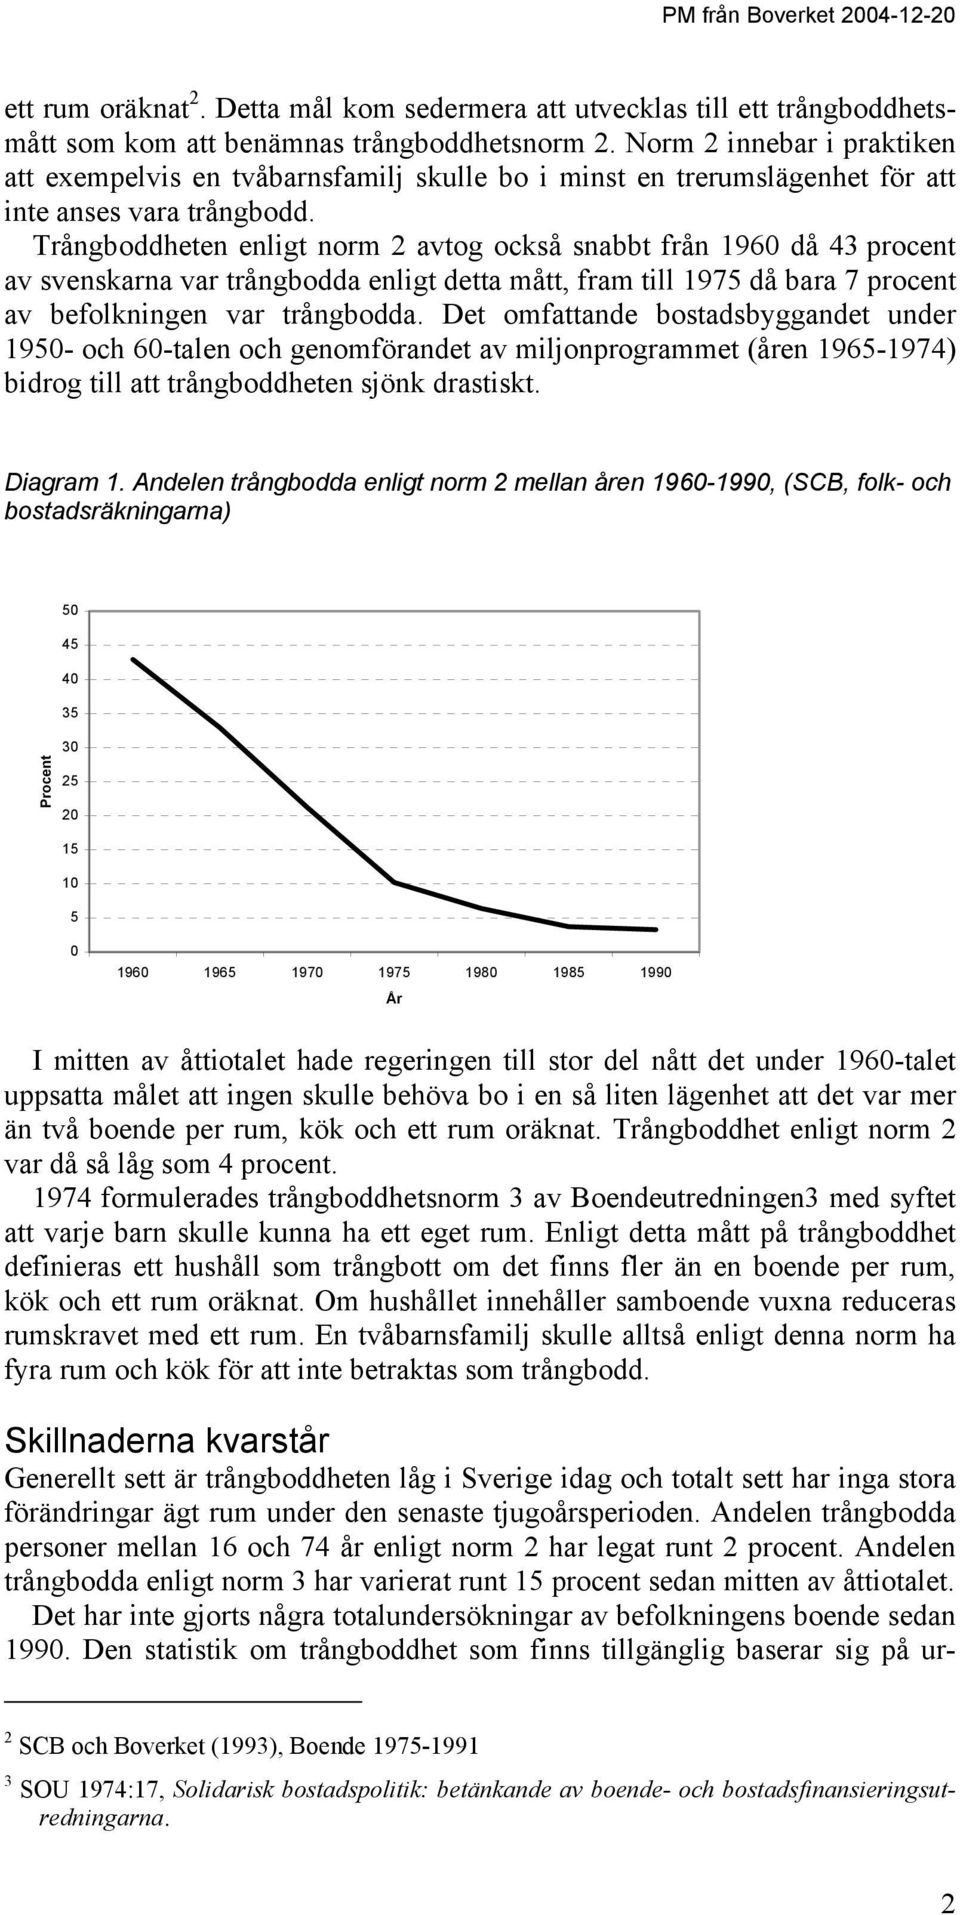 Trångboddheten enligt norm 2 avtog också snabbt från 1960 då 43 procent av svenskarna var trångbodda enligt detta mått, fram till 1975 då bara 7 procent av befolkningen var trångbodda.